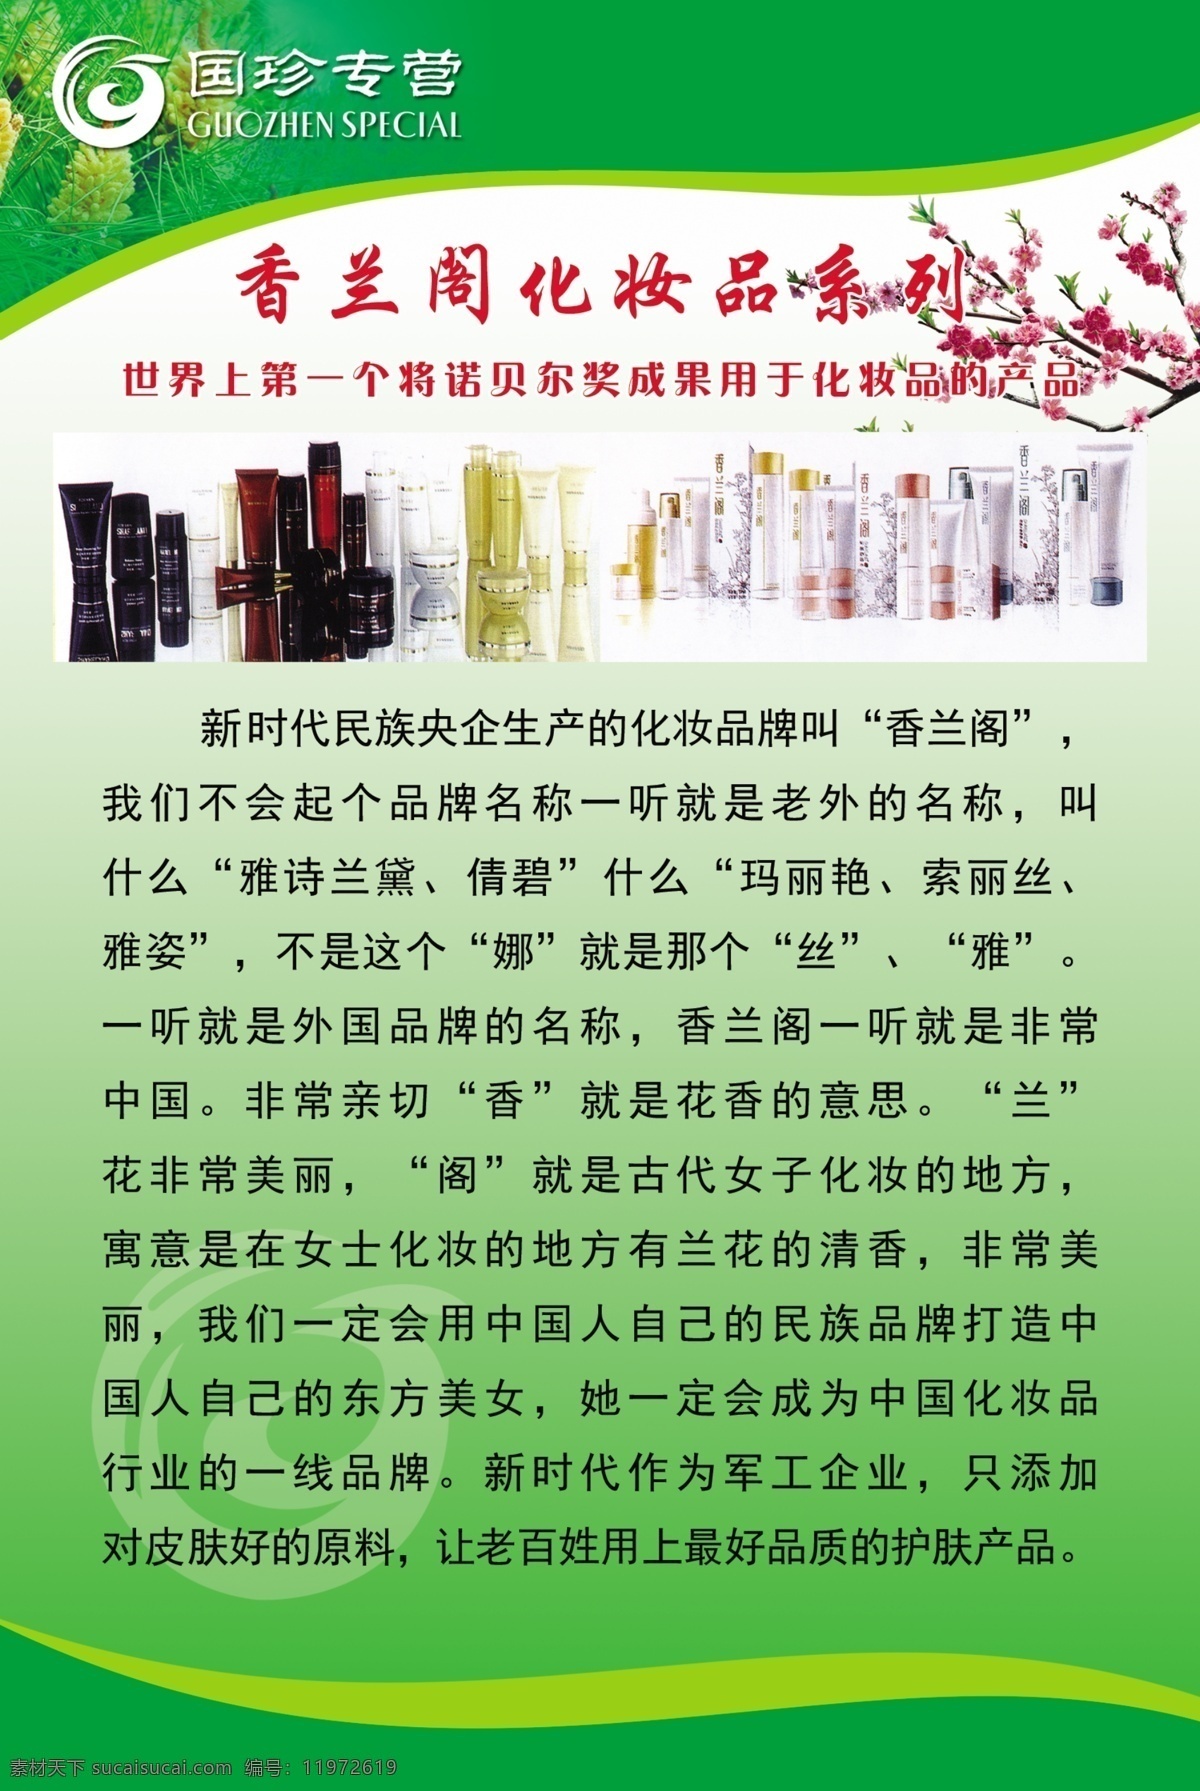 香兰 阁 化妆品 系列 香兰阁 化妆品系列 松花粉 展板 国珍 绿色 室内广告设计